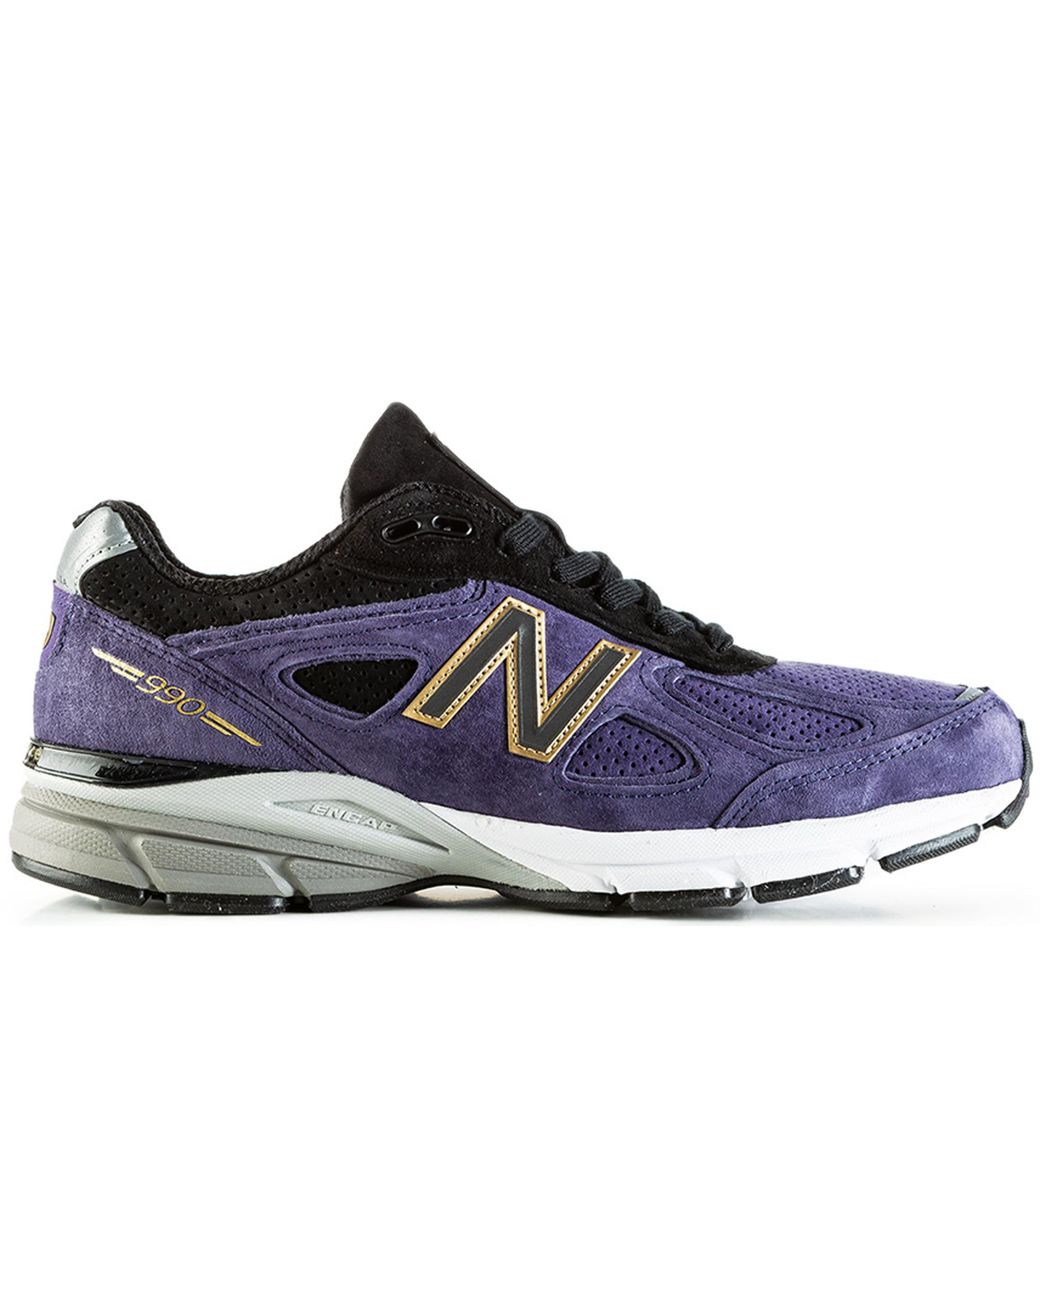 nb 990 purple